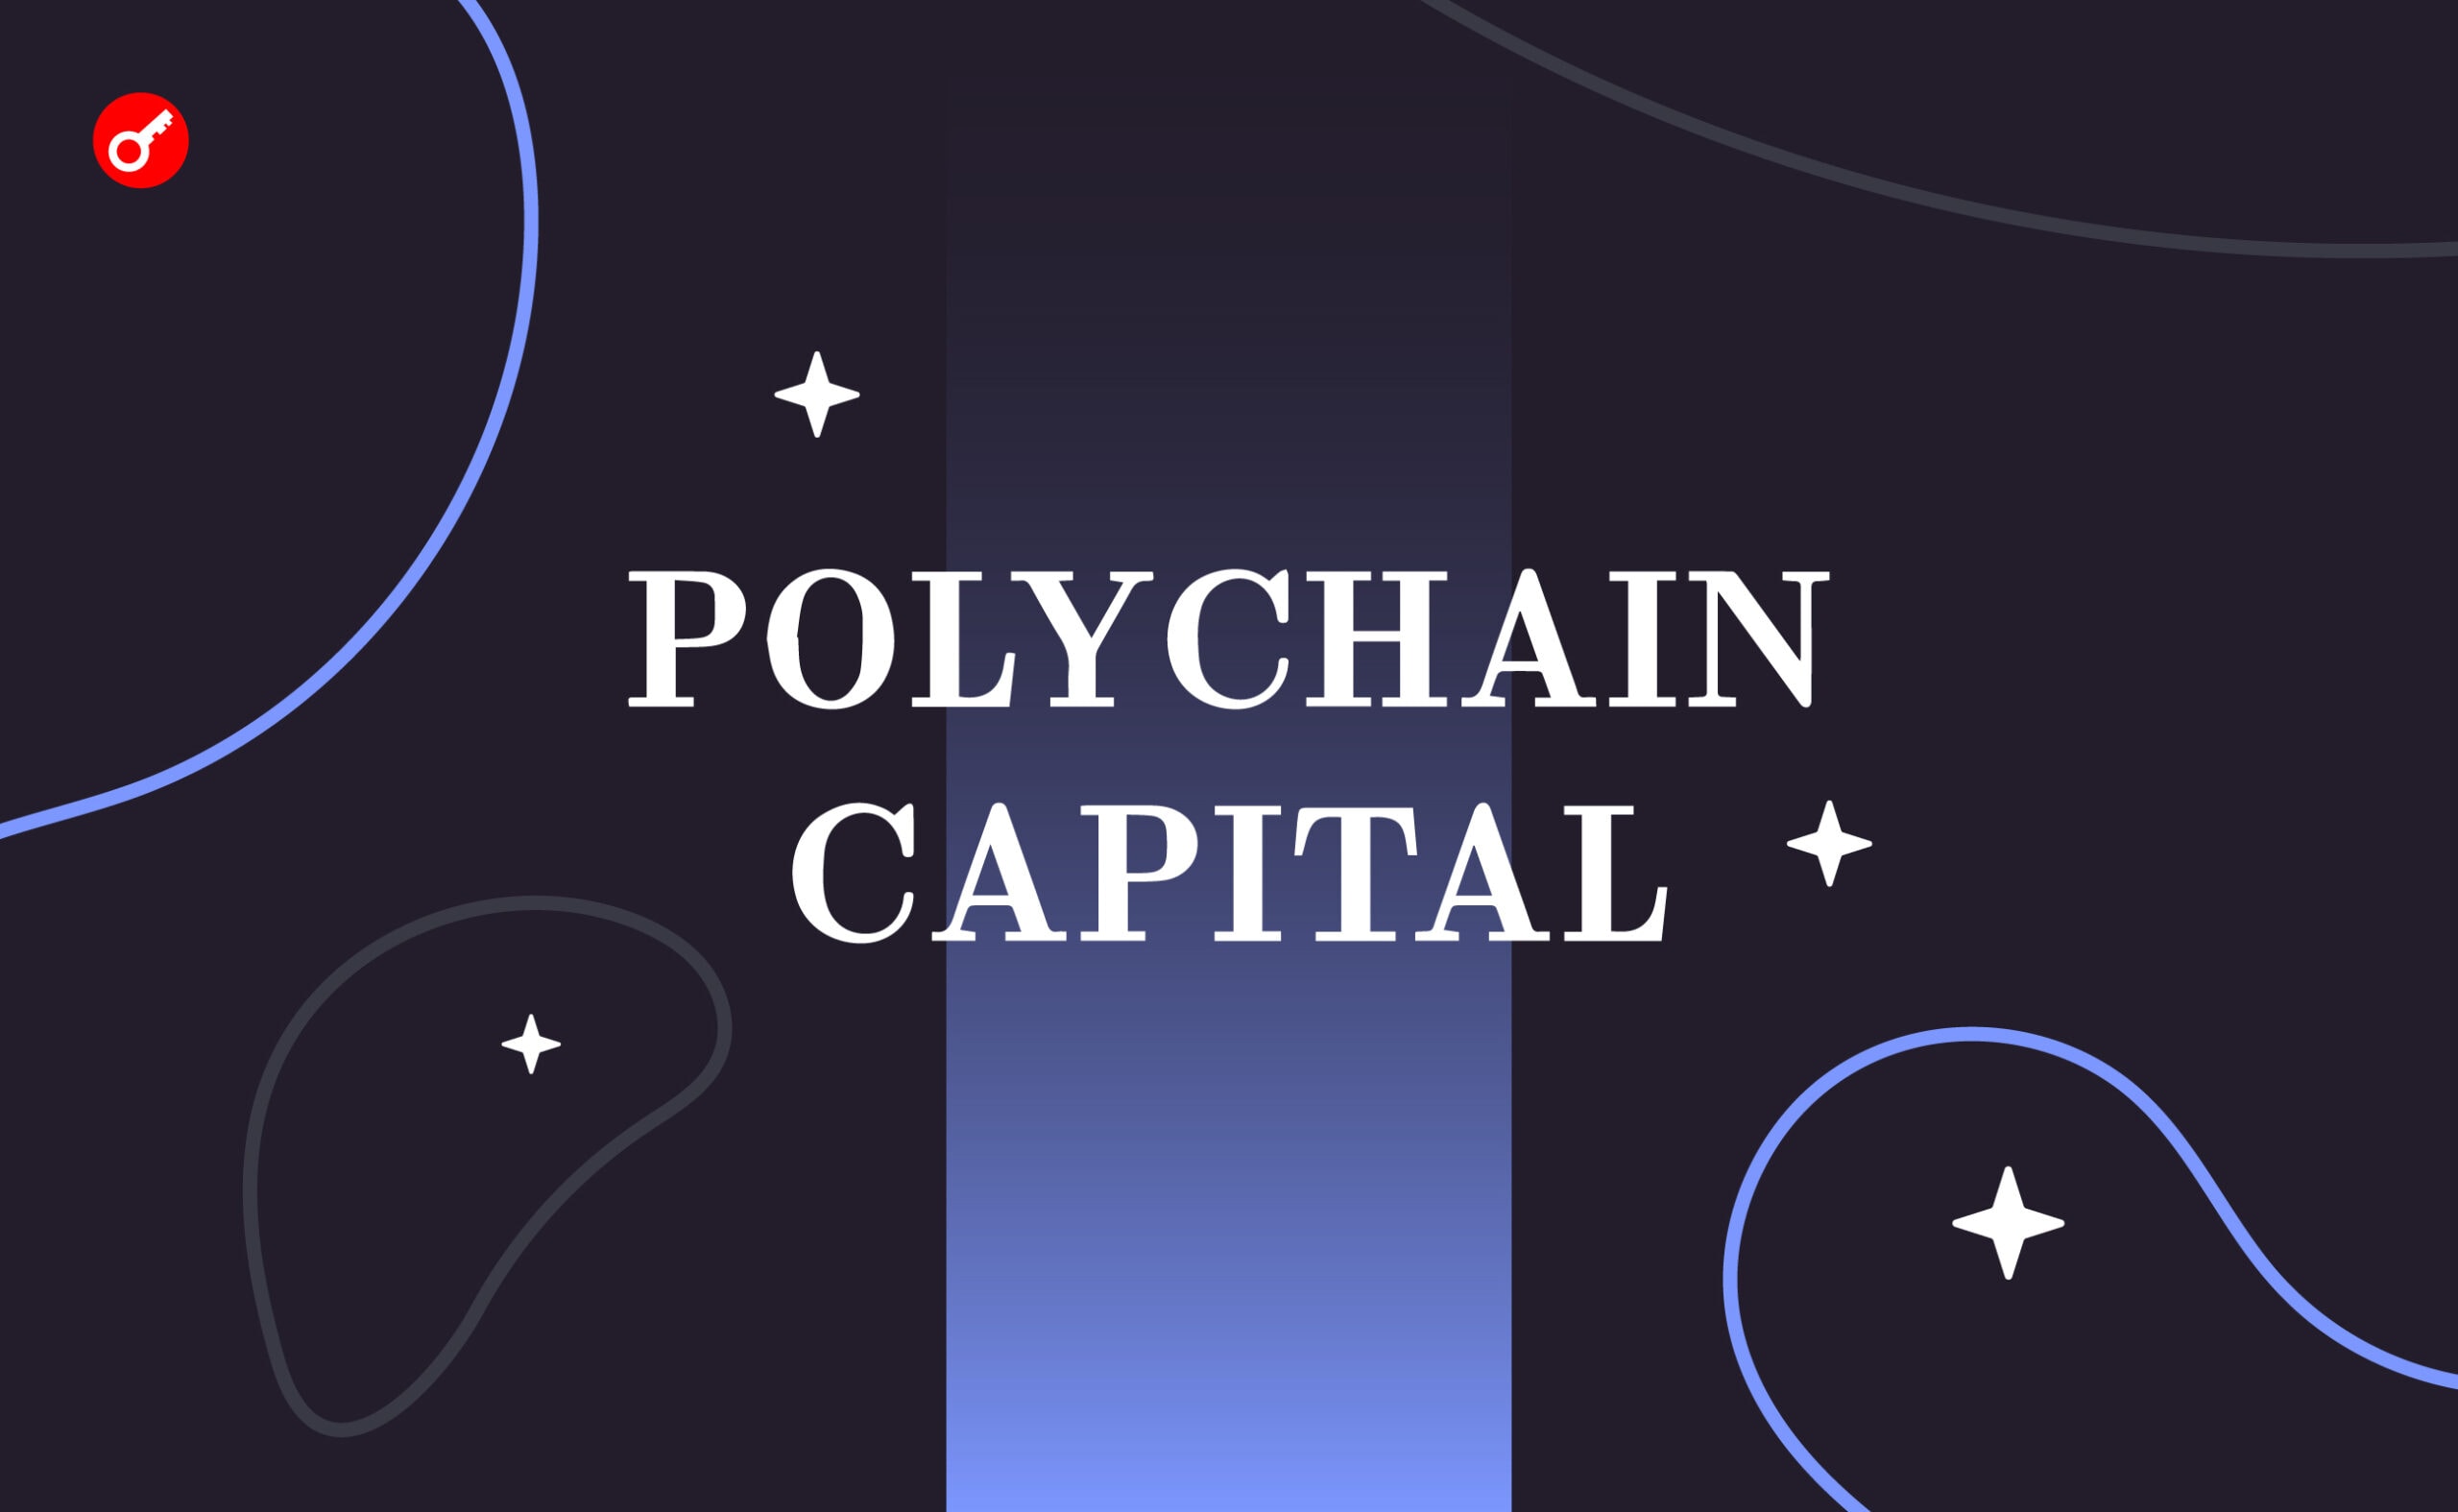 Polychain Capital pozyskuje 200 milionów dolarów w ramach czwartego funduszu. Główny kolaż wiadomości.